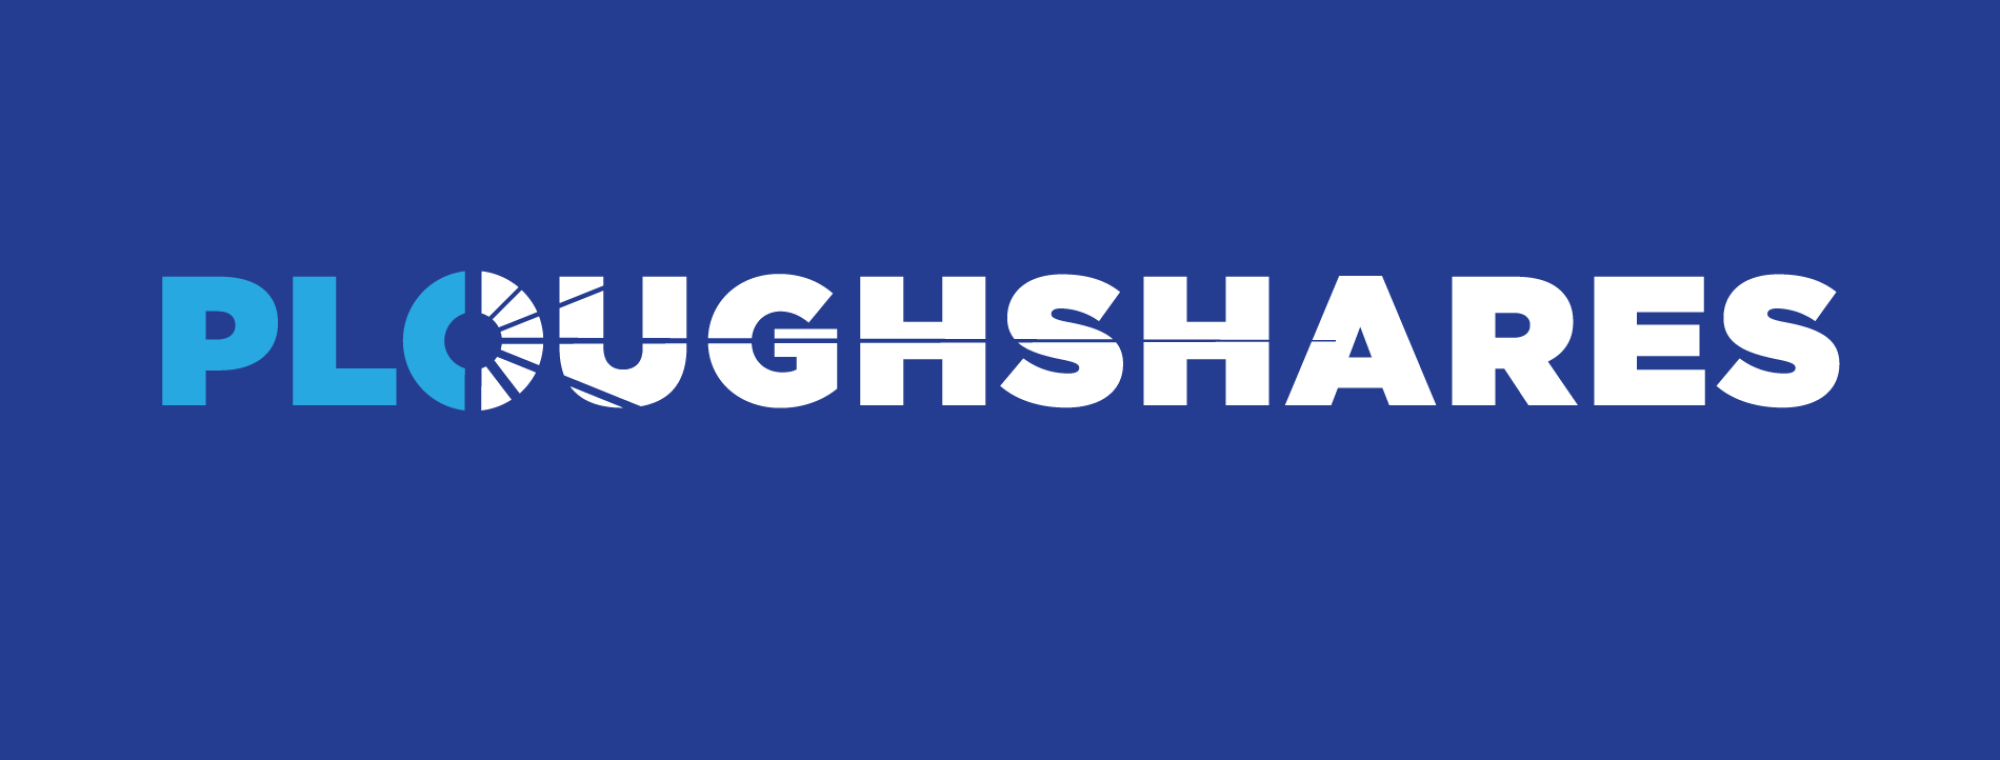 Ploughshares logo